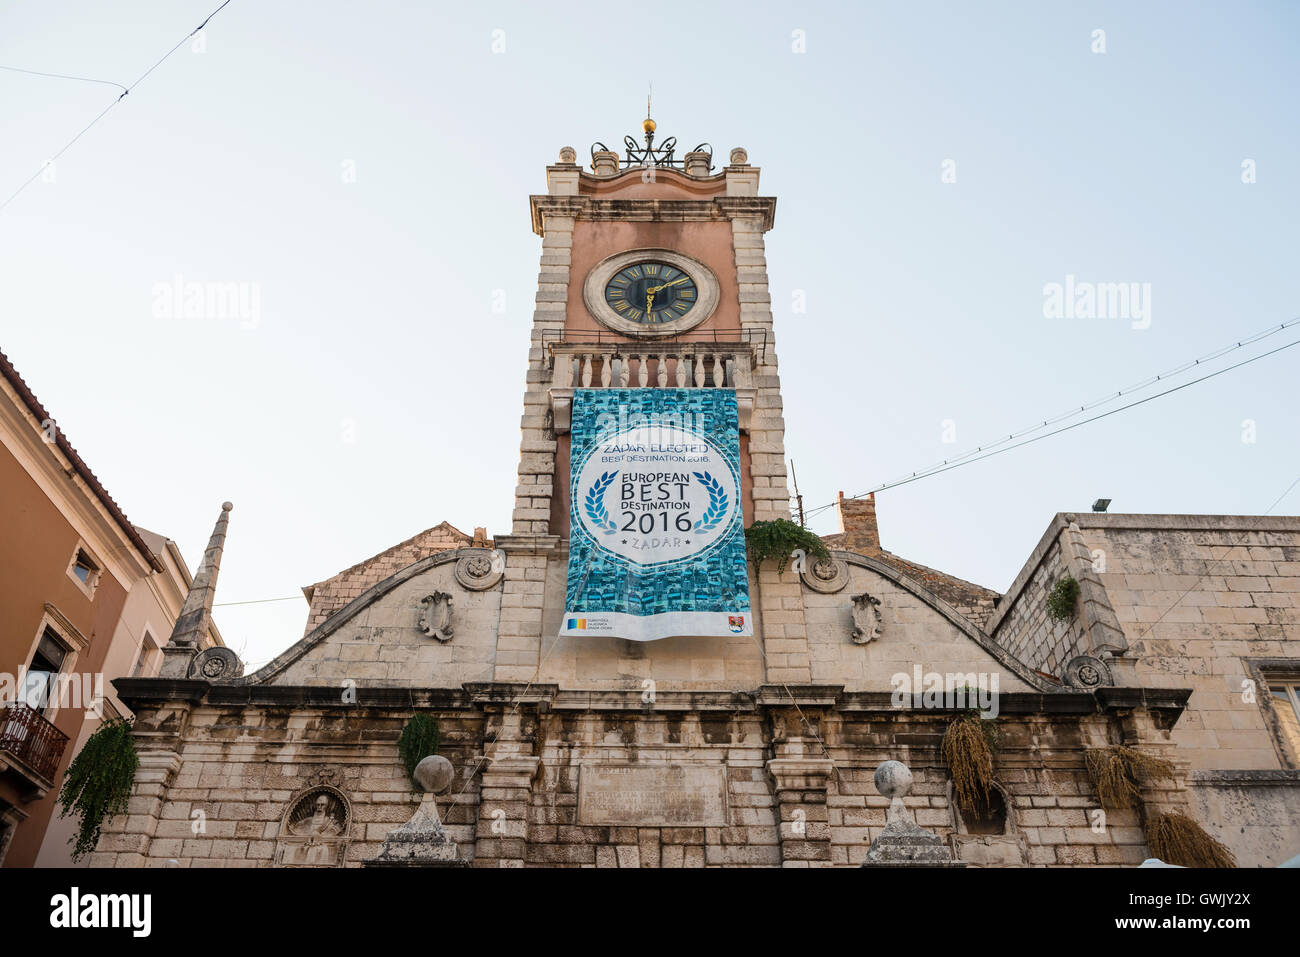 ZADAR, Croazia - 1 Settembre 2016: poster sulla città torre di guardia - Zadar è eletto per unione migliore destinazione per l'anno 2016 Foto Stock